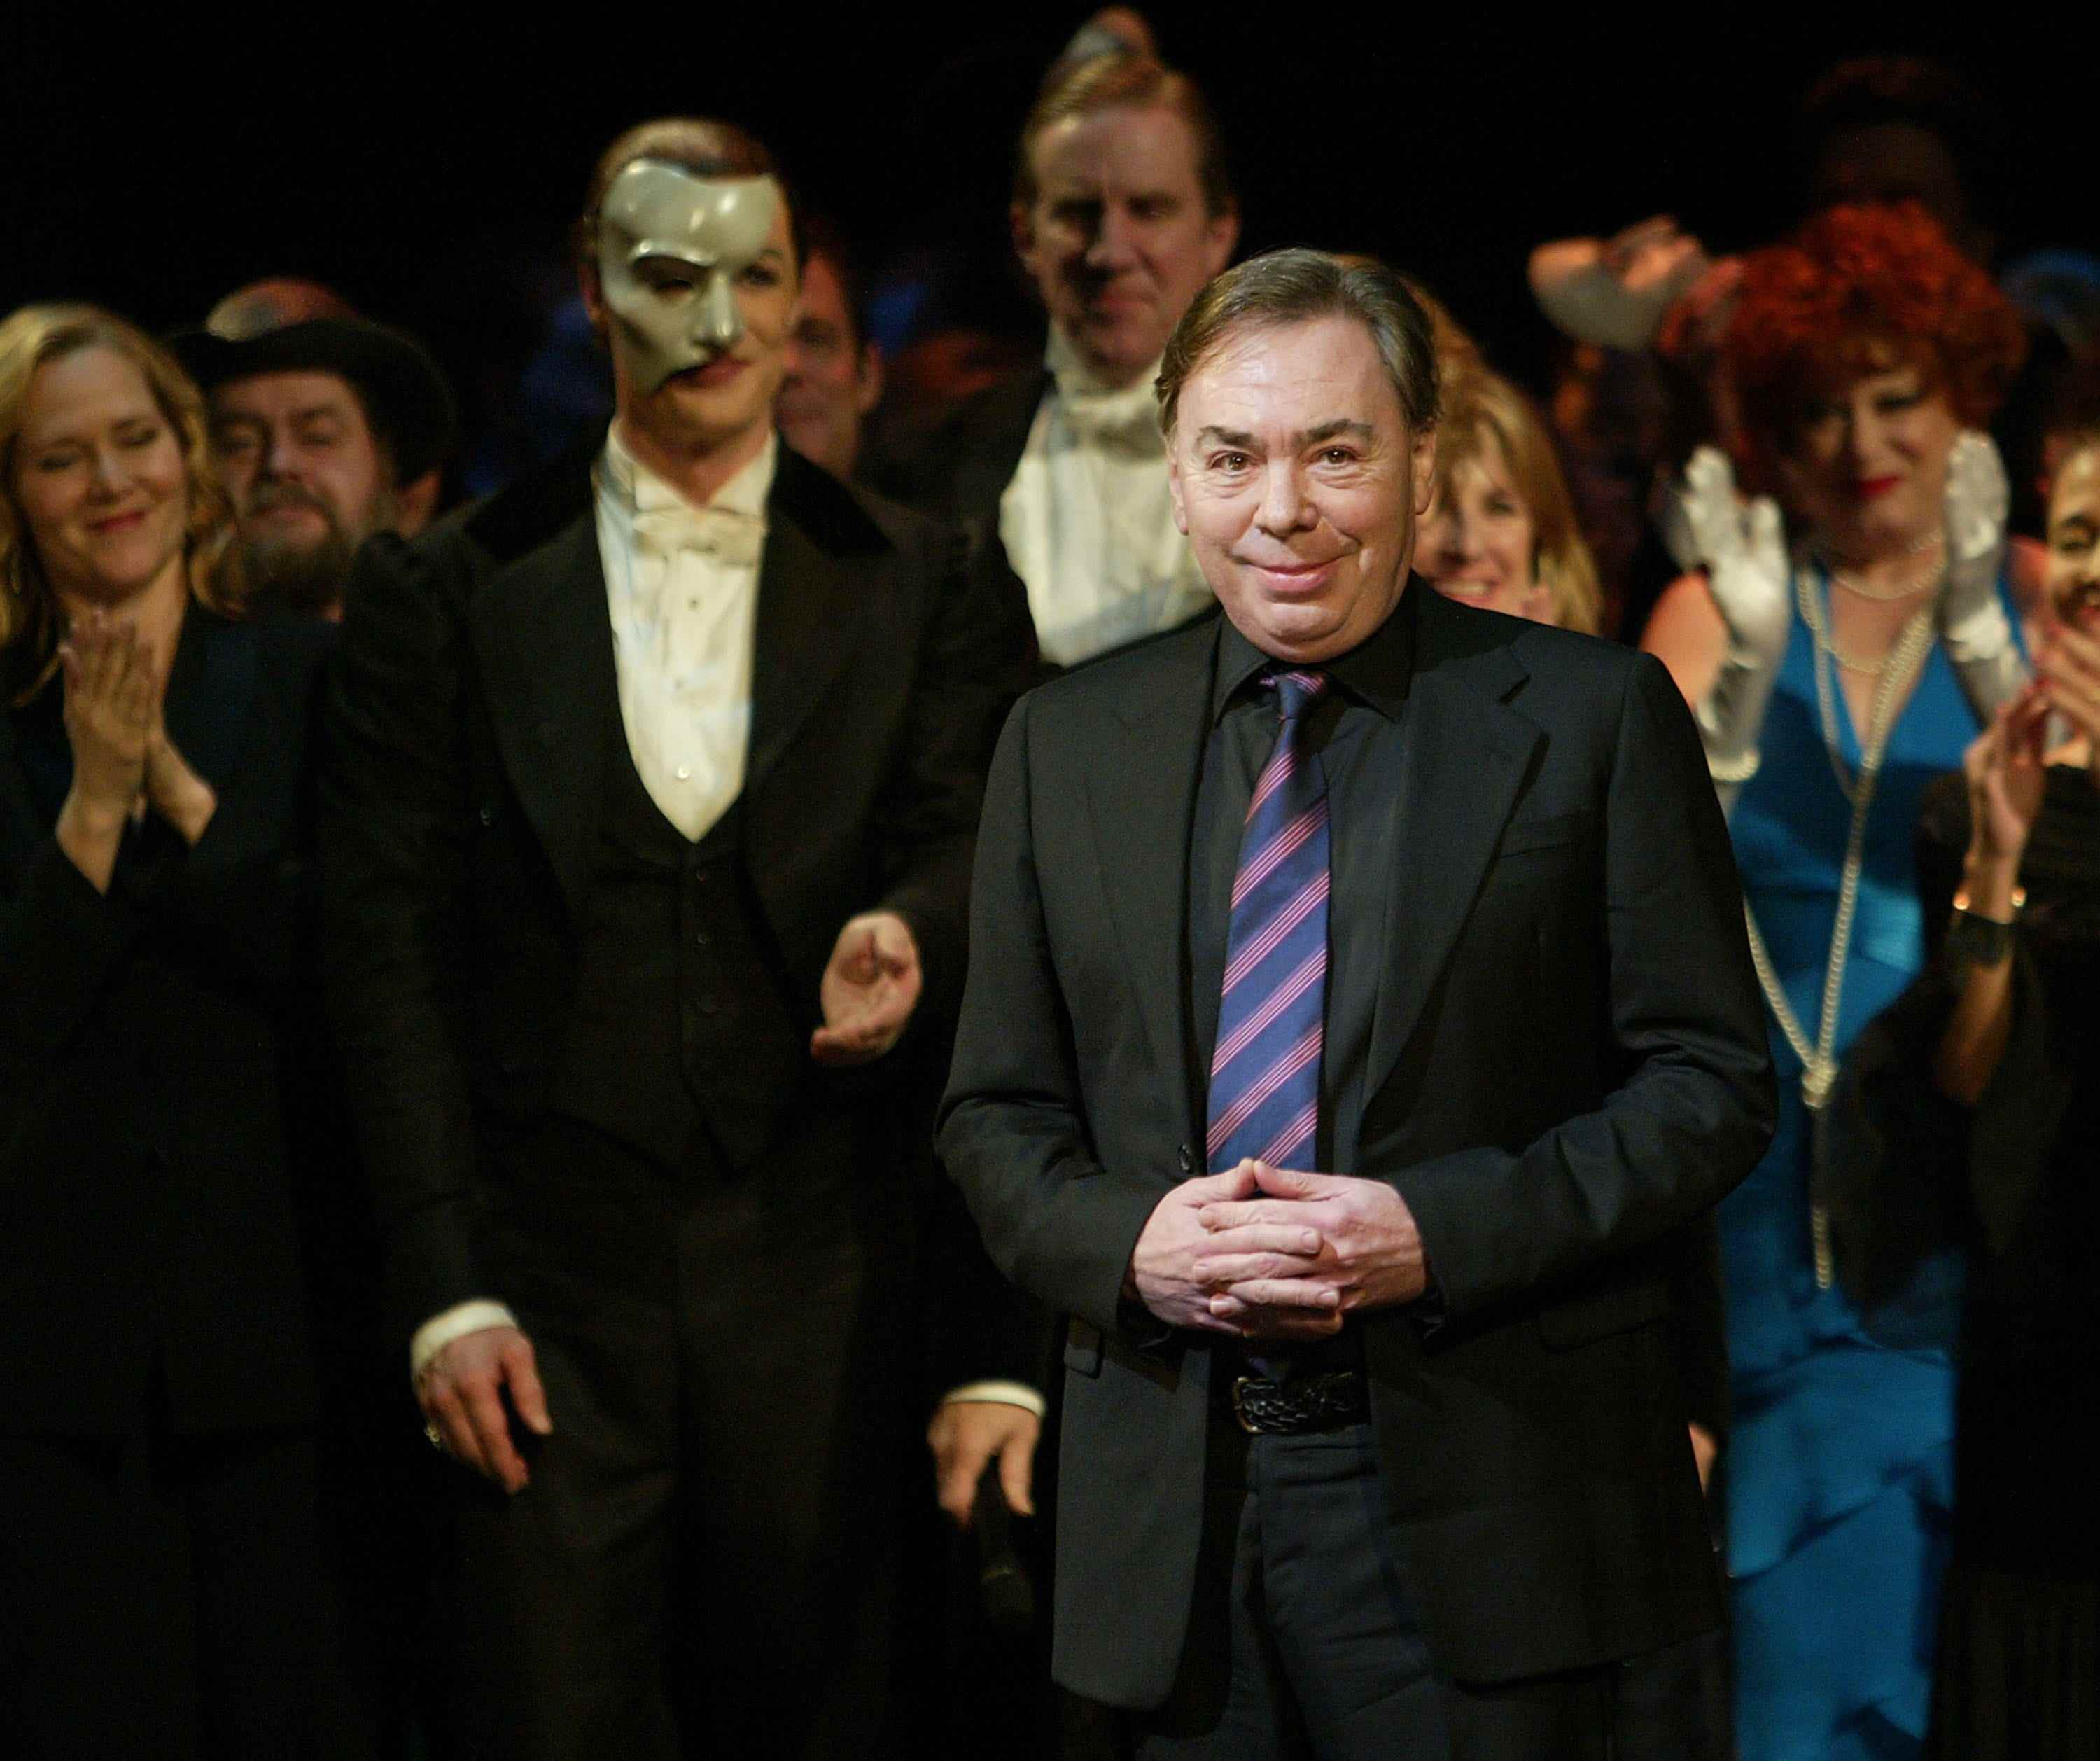 Andrew Lloyd Webber faltet seine Hände in einem schwarzen Anzug und einer gestreiften Krawatte